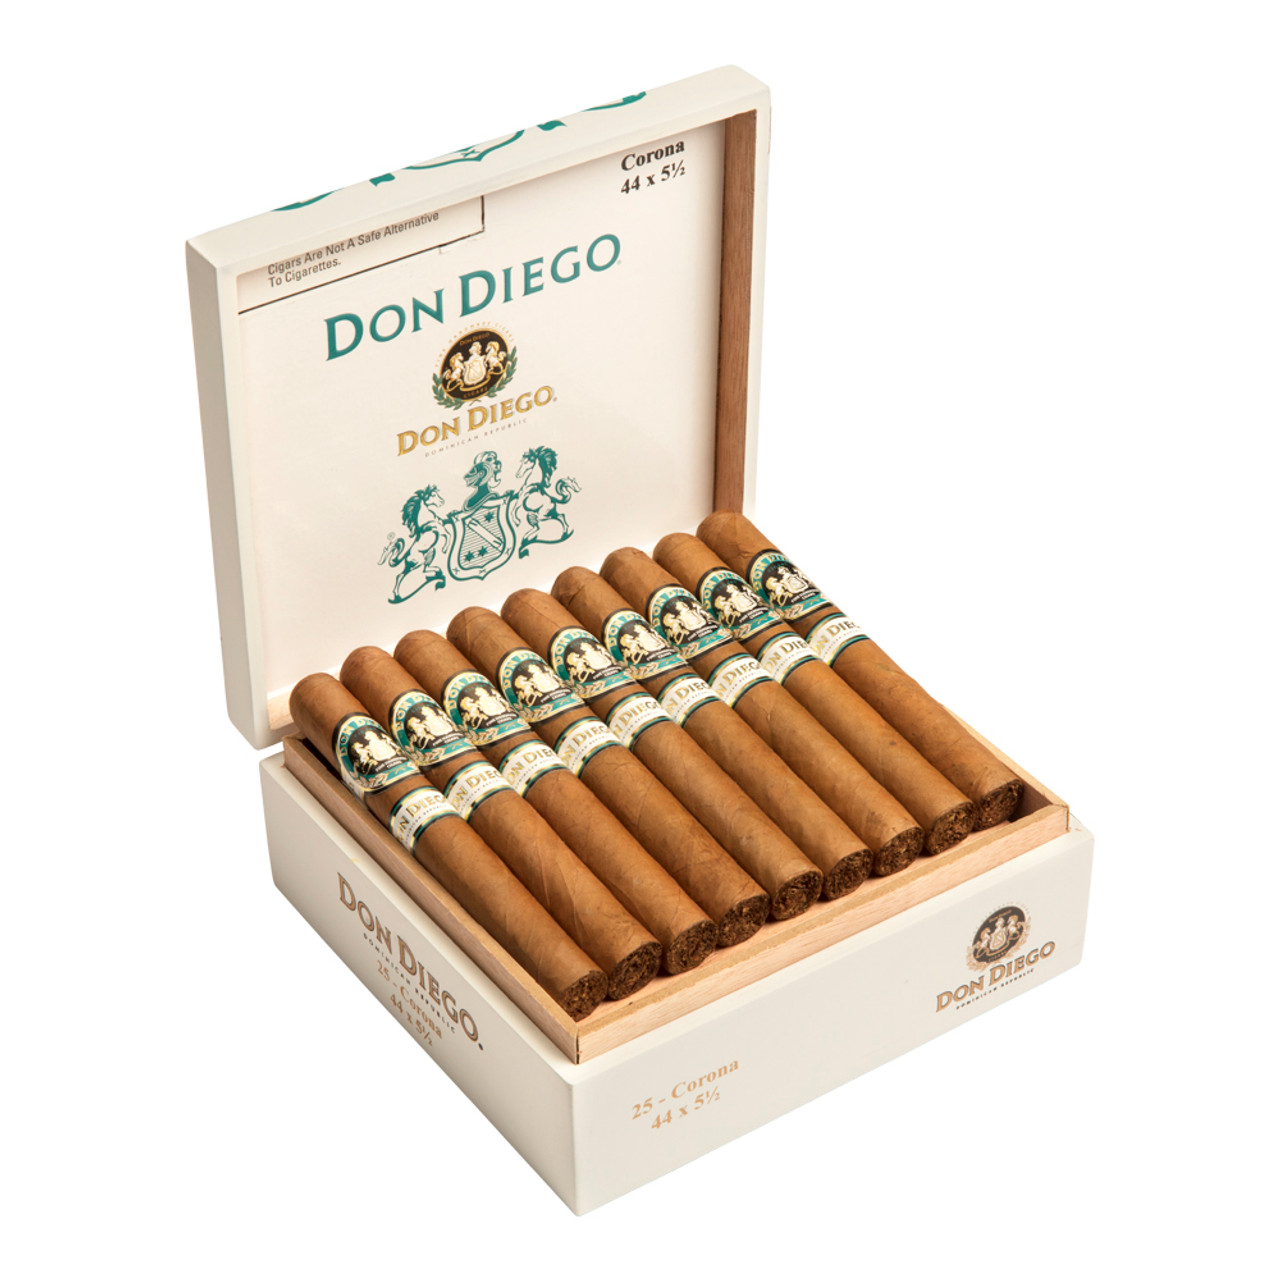 Don Diego Corona Cigars - 5.5 x 44 (Box of 25)